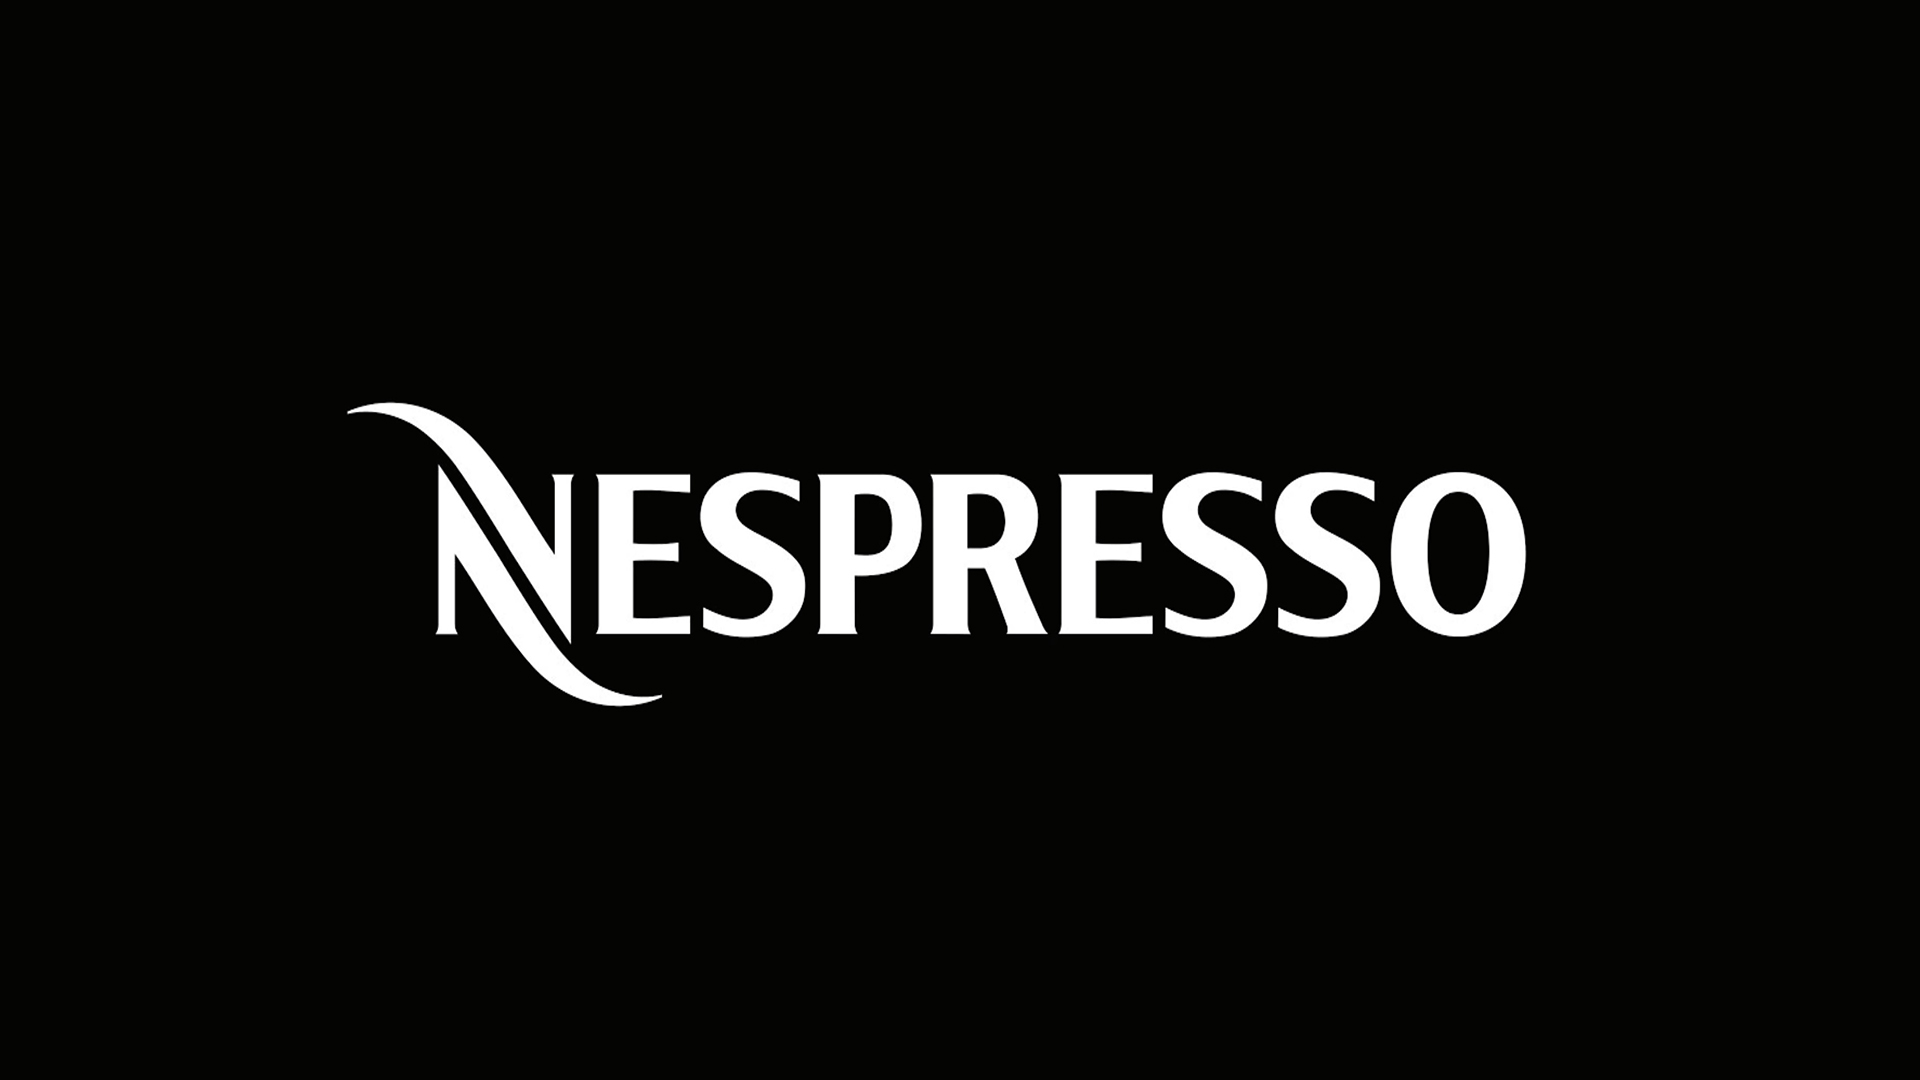 Nespresso, Vertuo ailesinin en yeni üyeleri  Vertuo Lattissima ve Vertuo Creatista’yı kahveseverlerle tanıştırıyor.